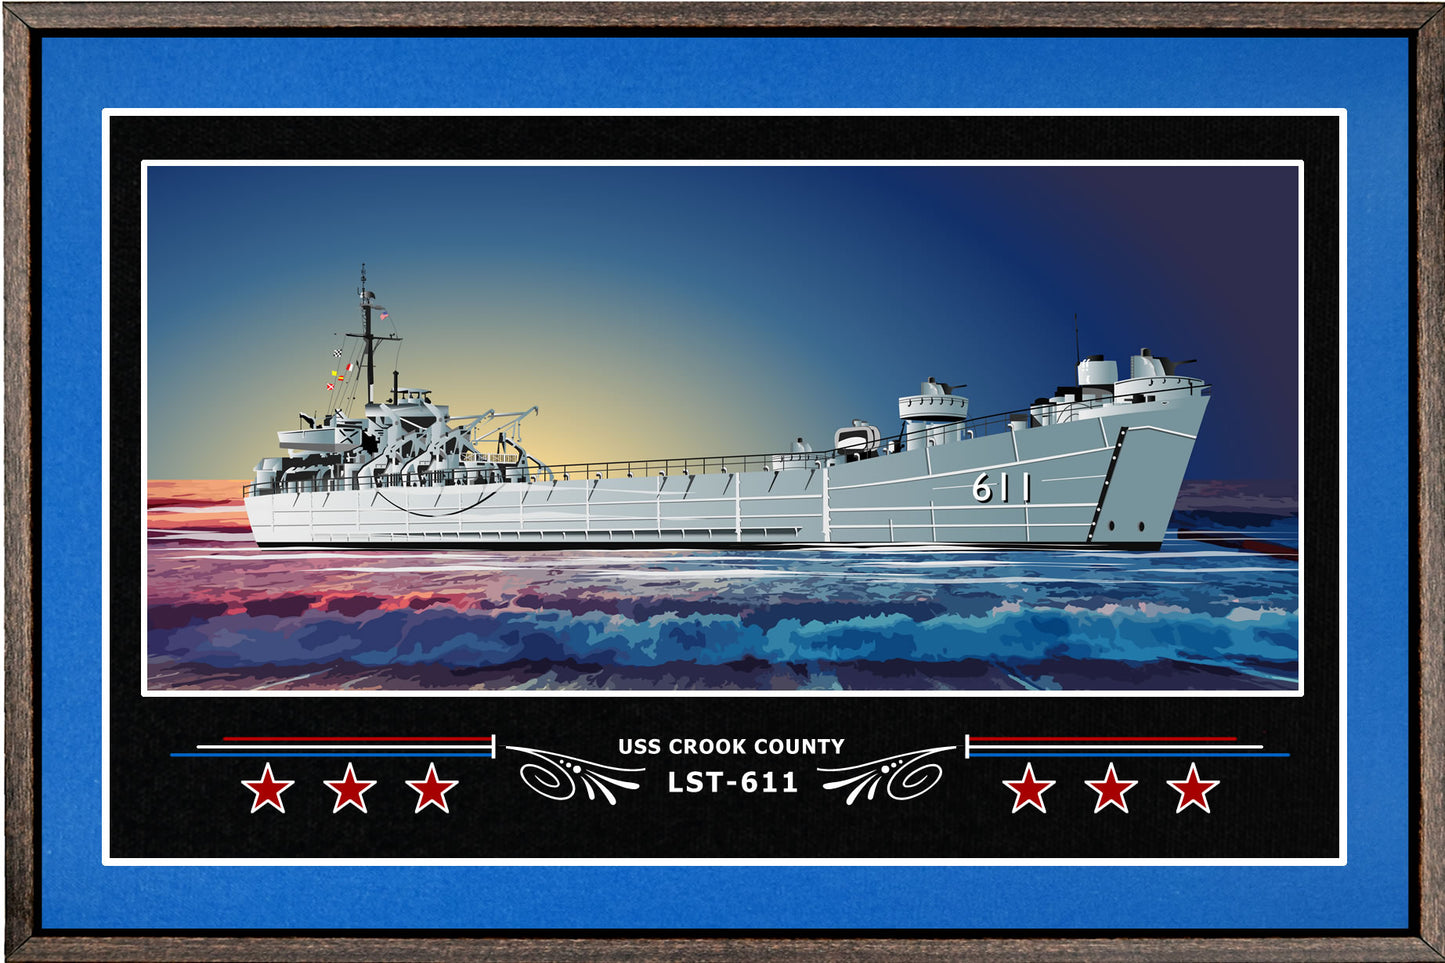 USS CROOK COUNTY LST 611 BOX FRAMED CANVAS ART BLUE